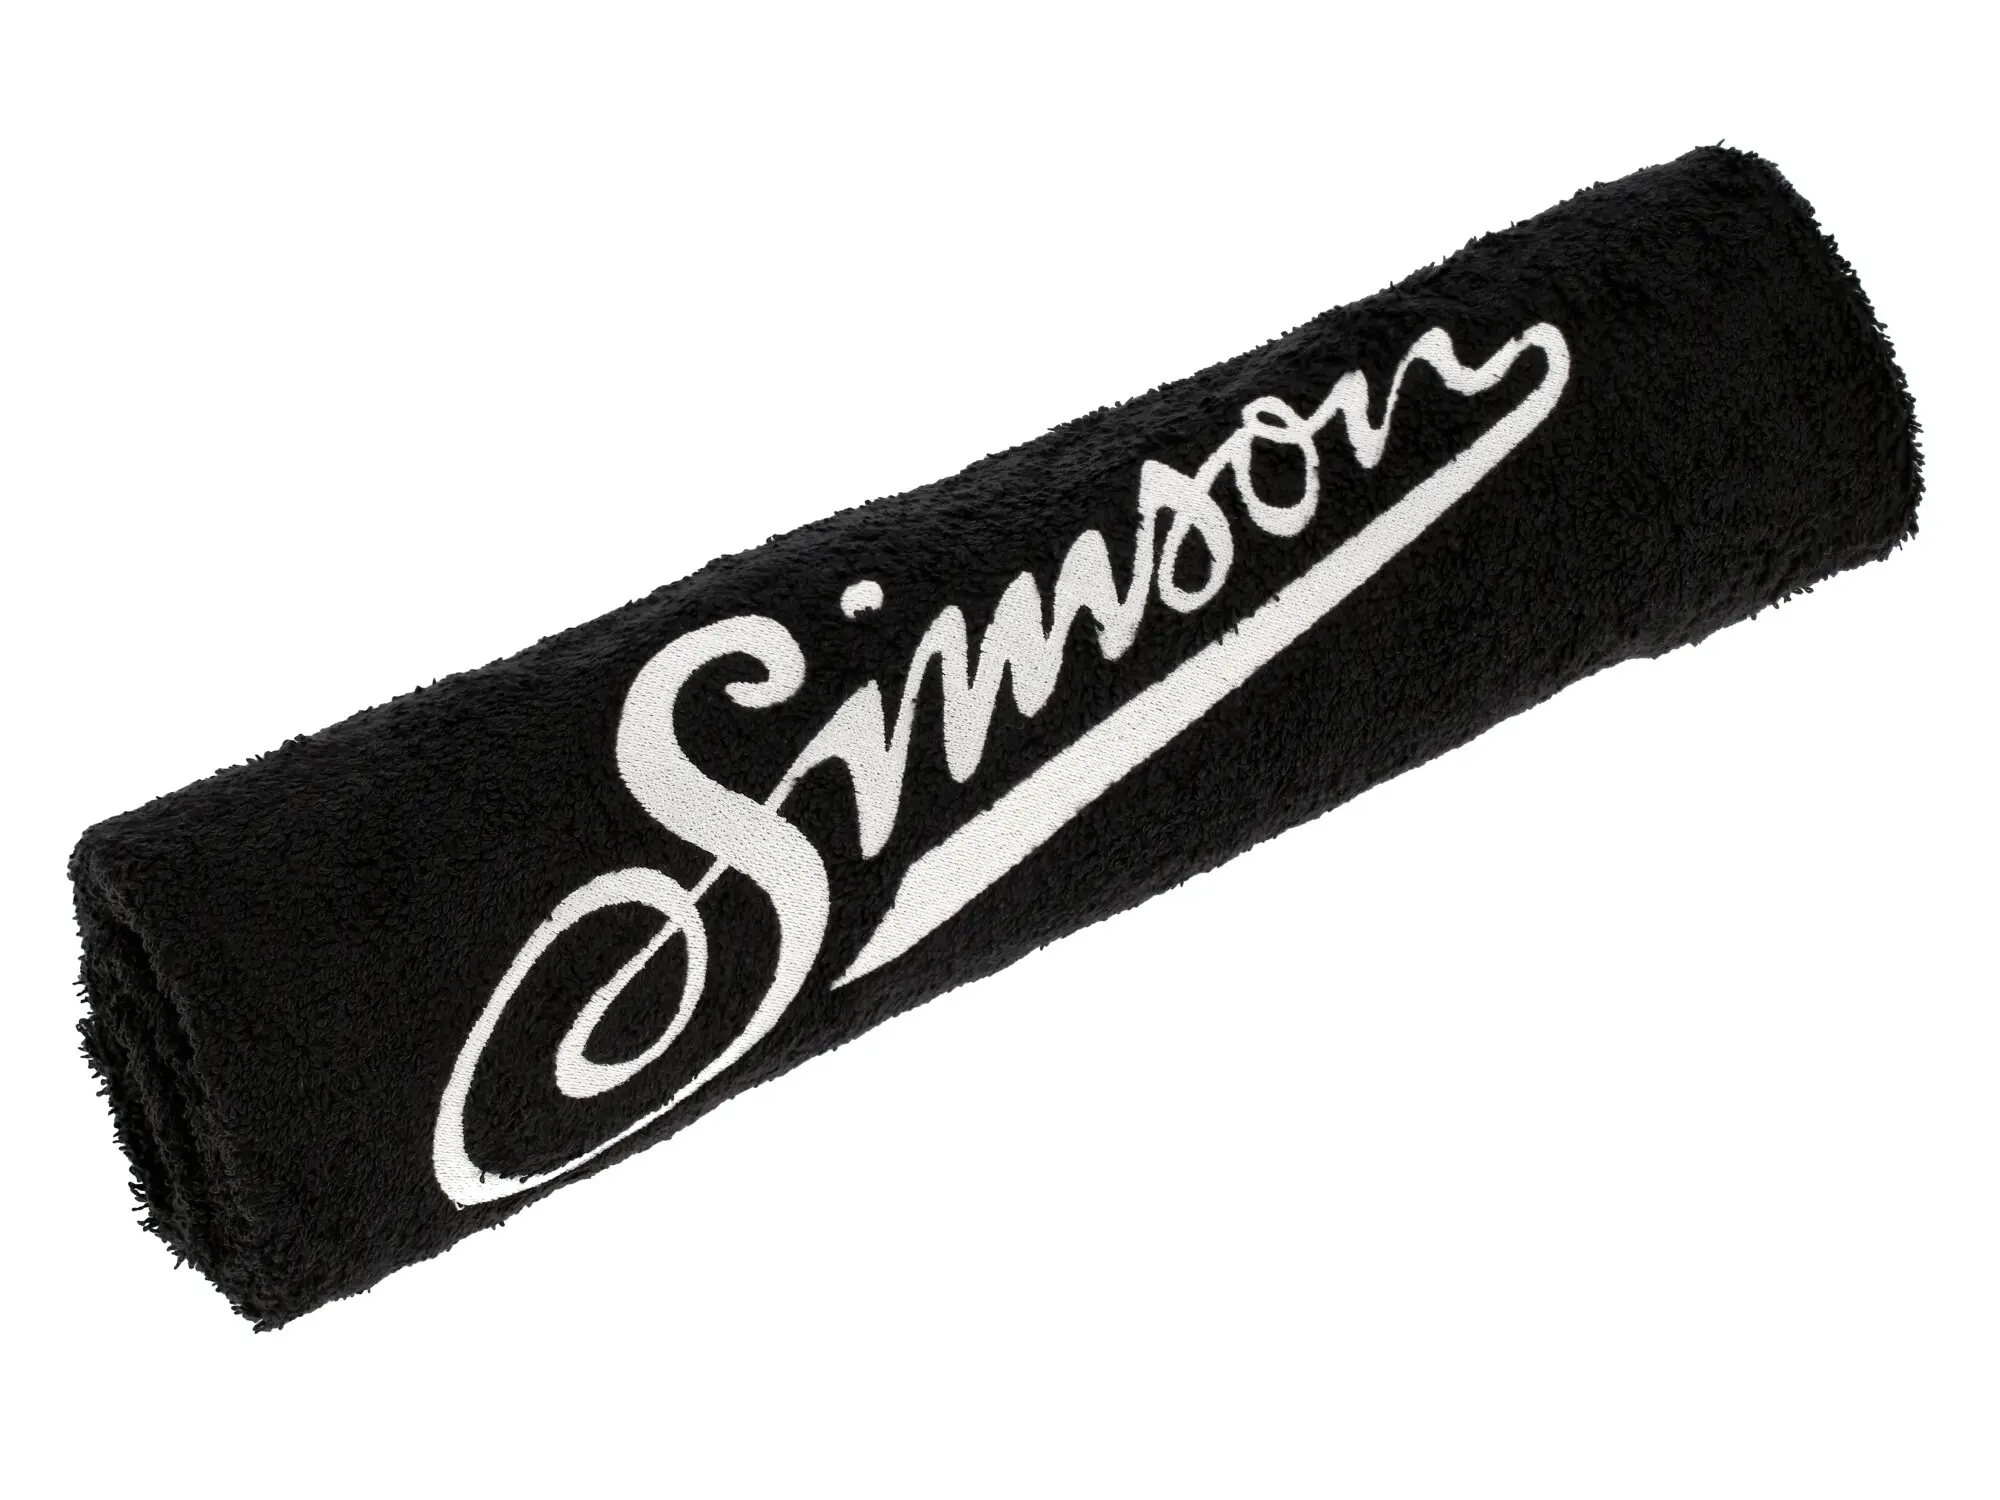 Handtuch "Simson" 100x50cm - Schwarz, Item no: 10076076 - Image 1